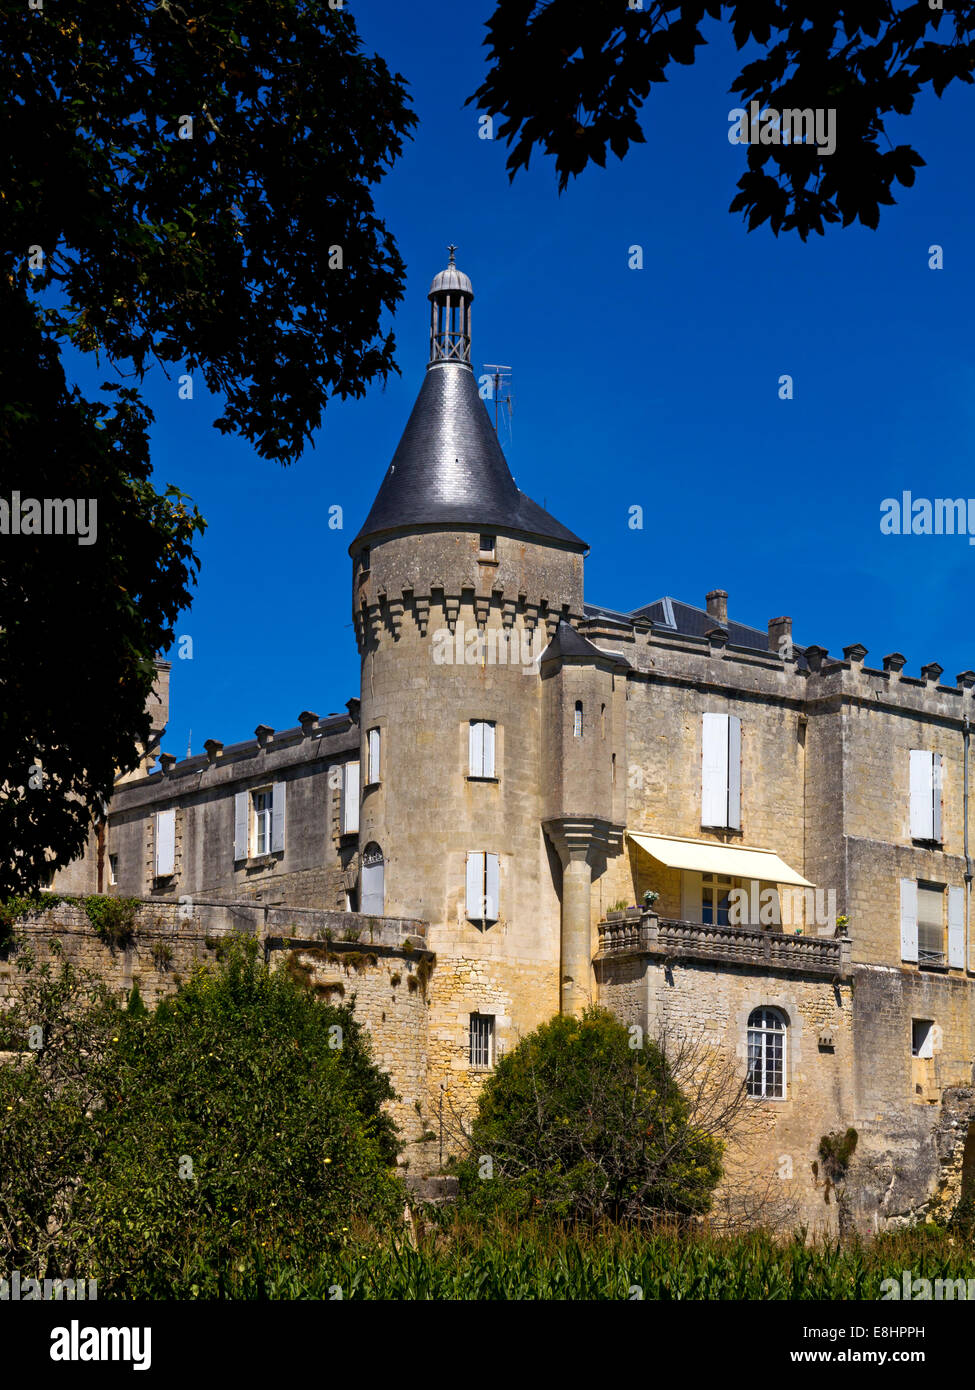 Le château du xve siècle à Jonzac, en Charente-Maritime du sud-ouest de la France Banque D'Images